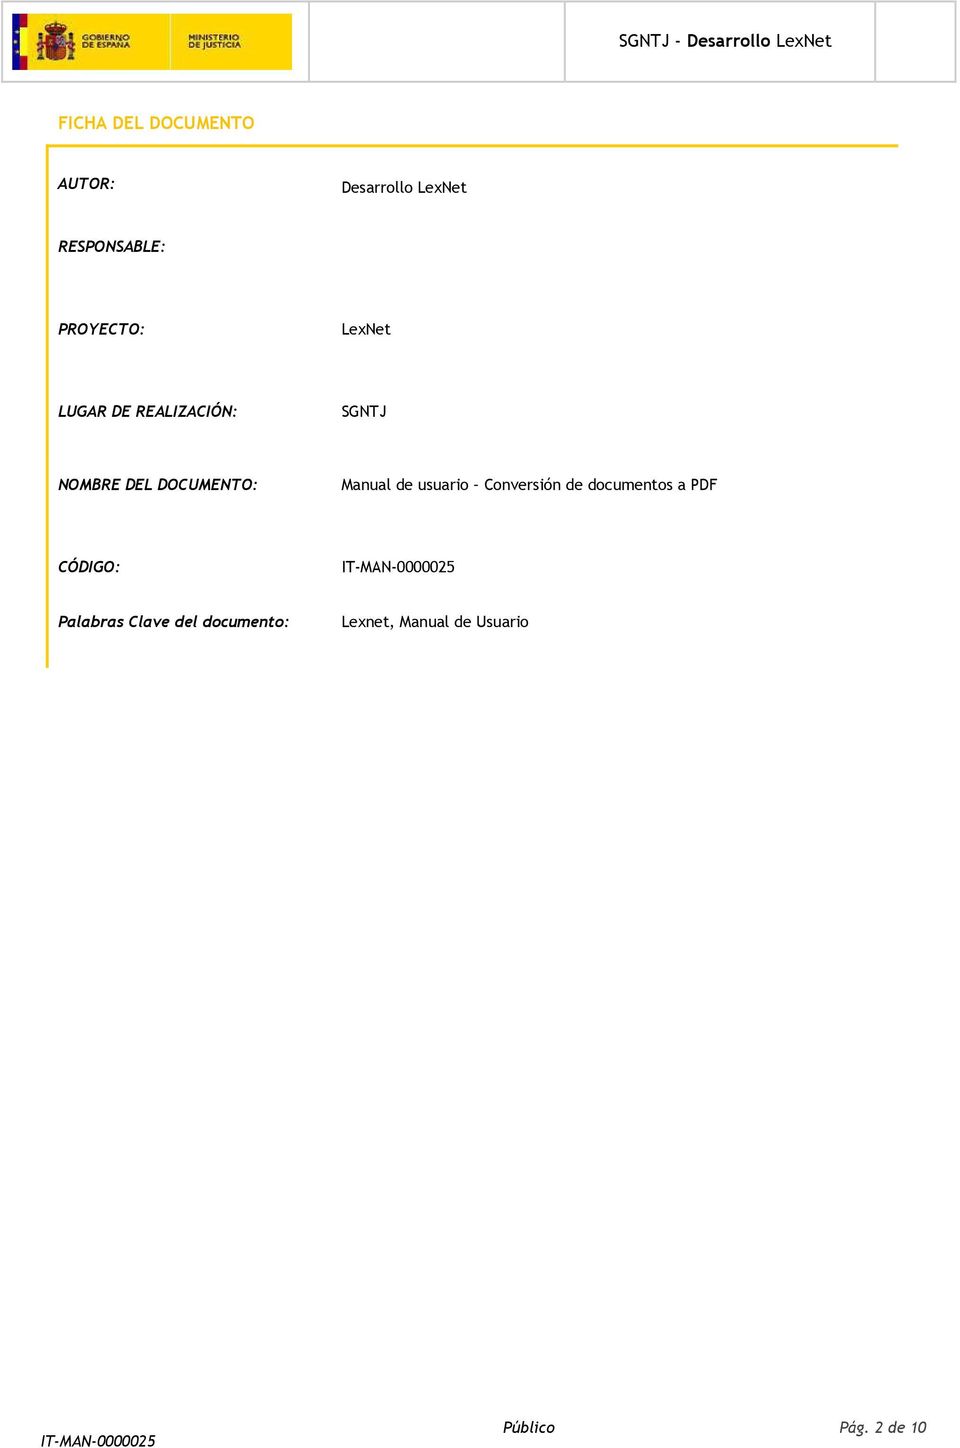 DOCUMENTO: Manual de usuario Conversión de documentos a PDF